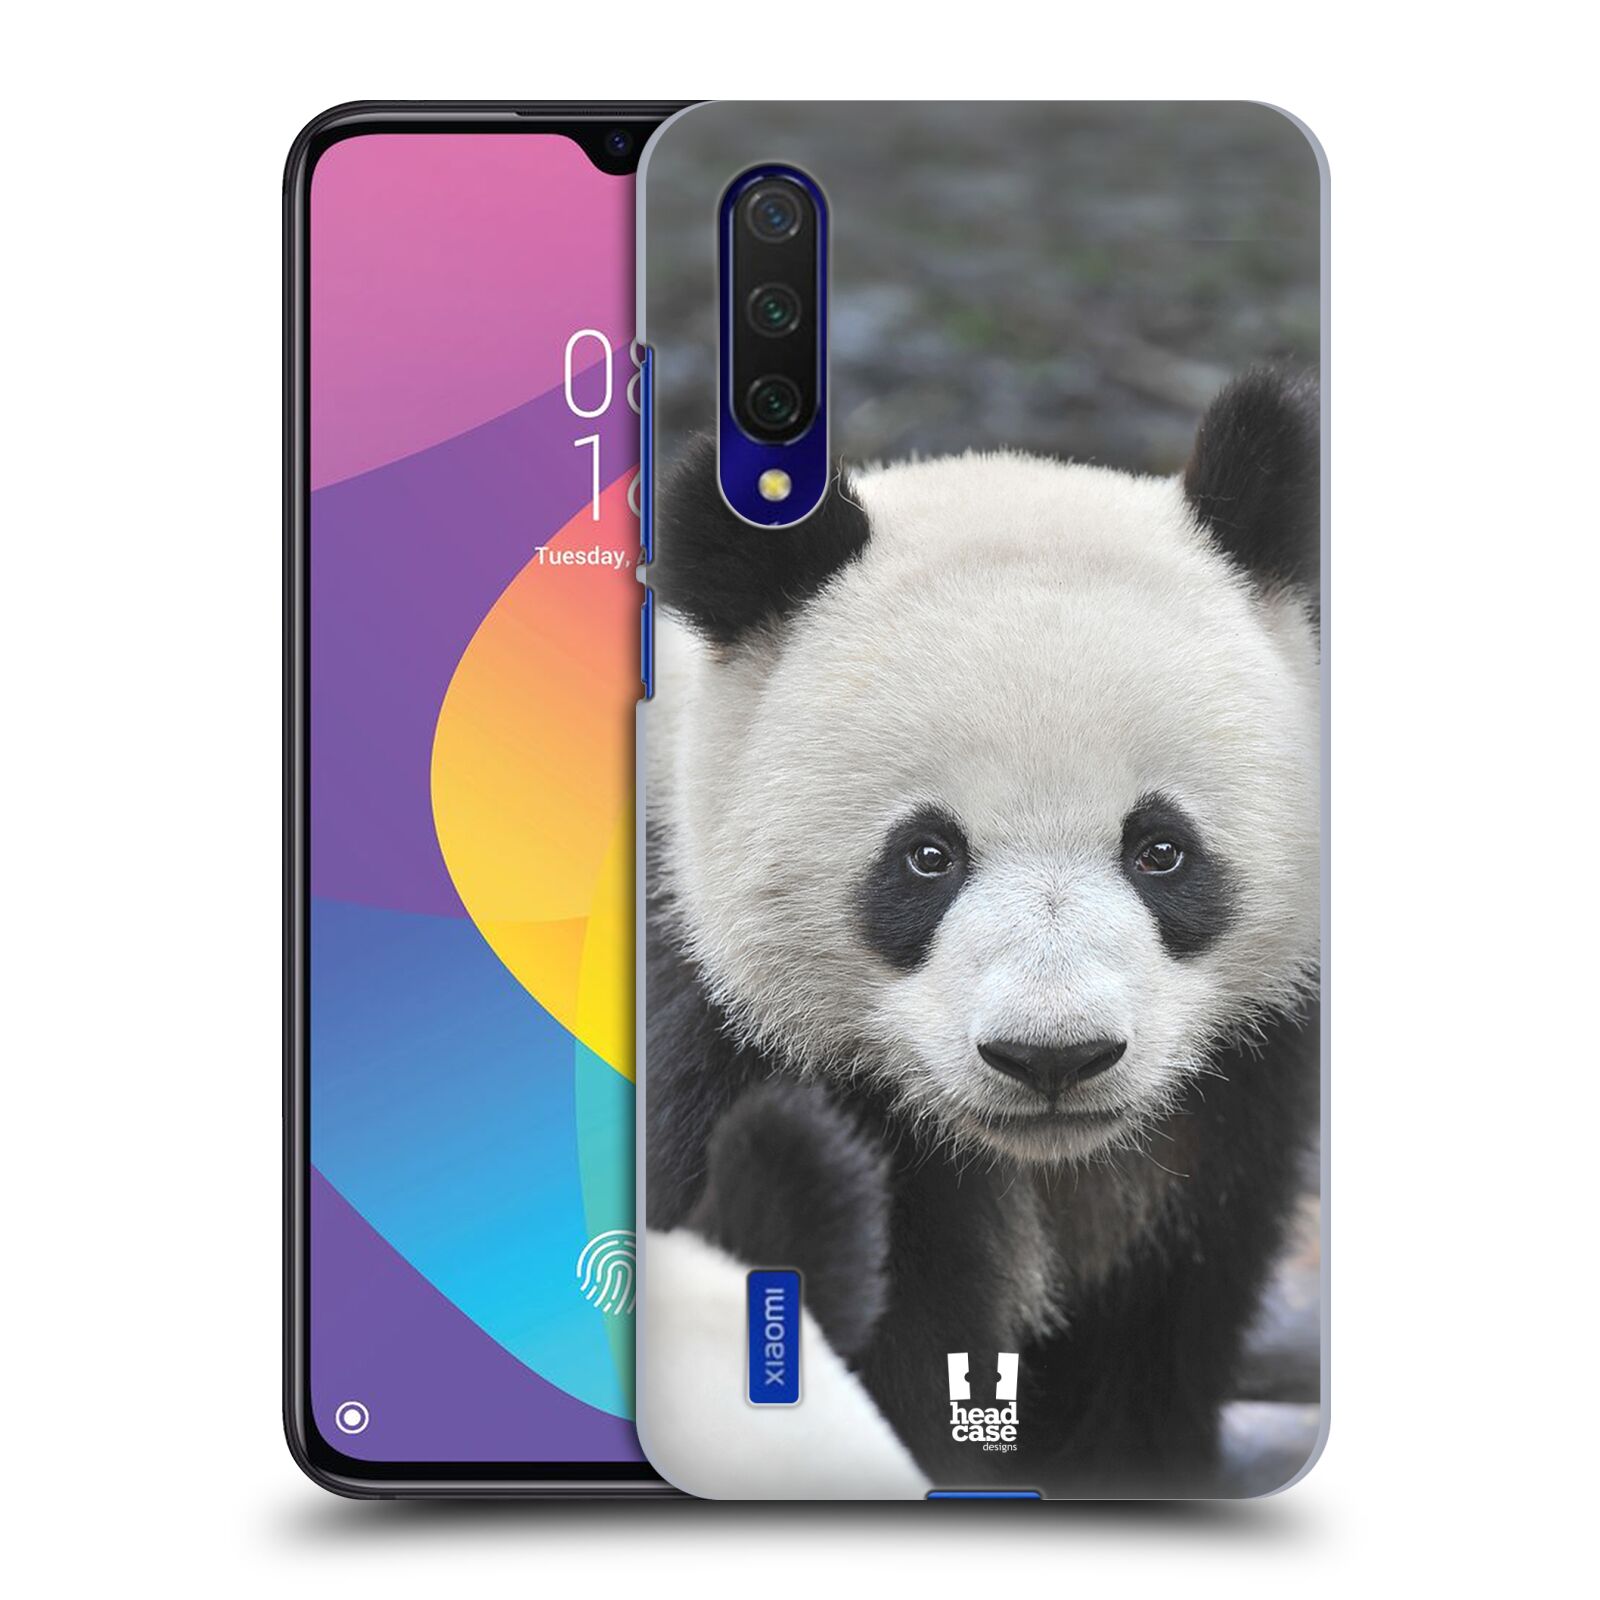 Zadní obal pro mobil Xiaomi Mi 9 LITE - HEAD CASE - Svět zvířat medvěd panda